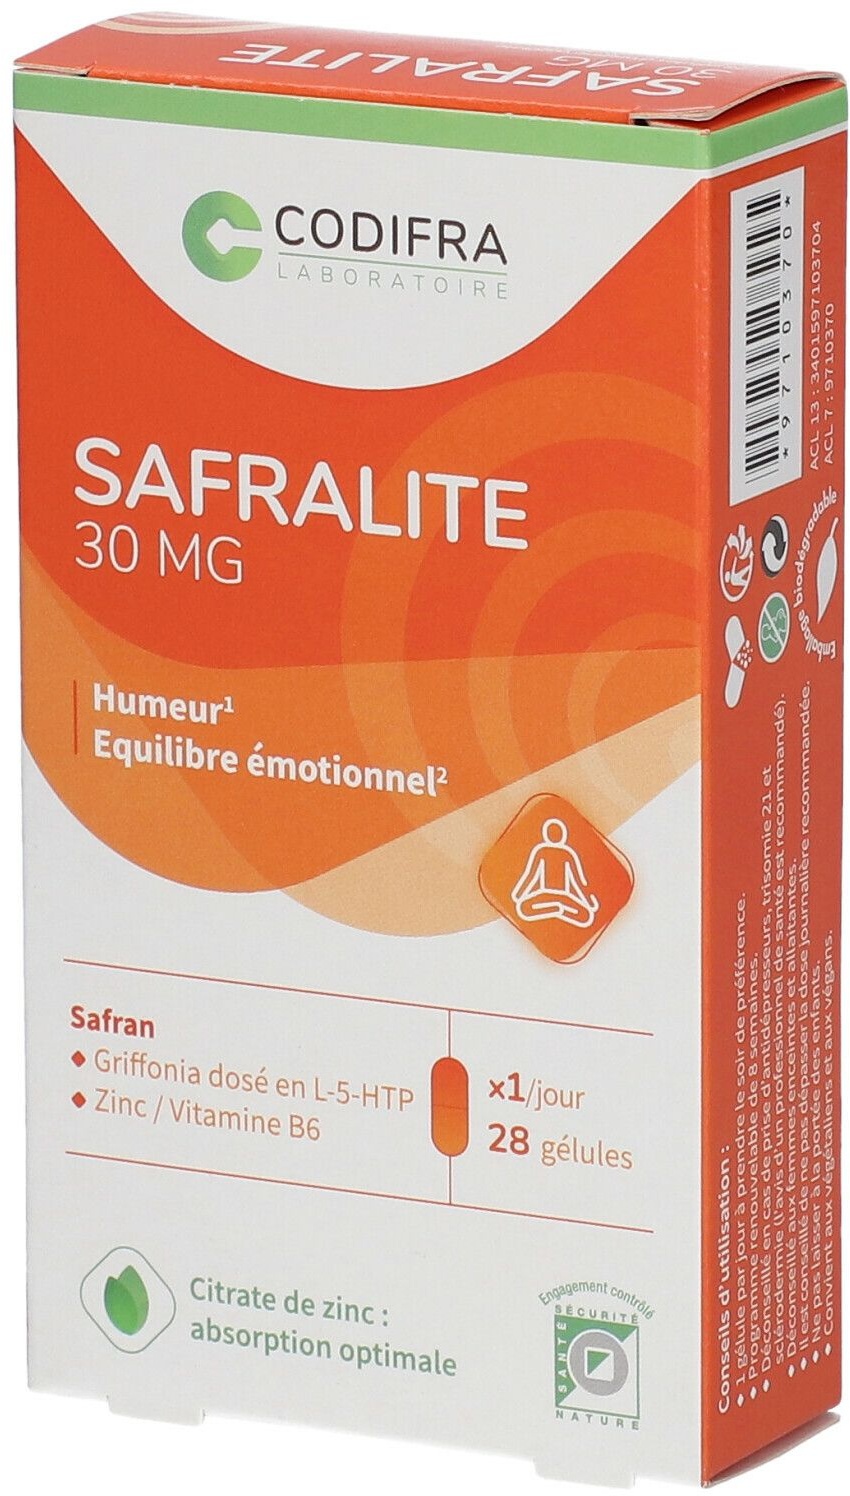 Codifra safralite 30 mg 28 pc(s) capsule(s)